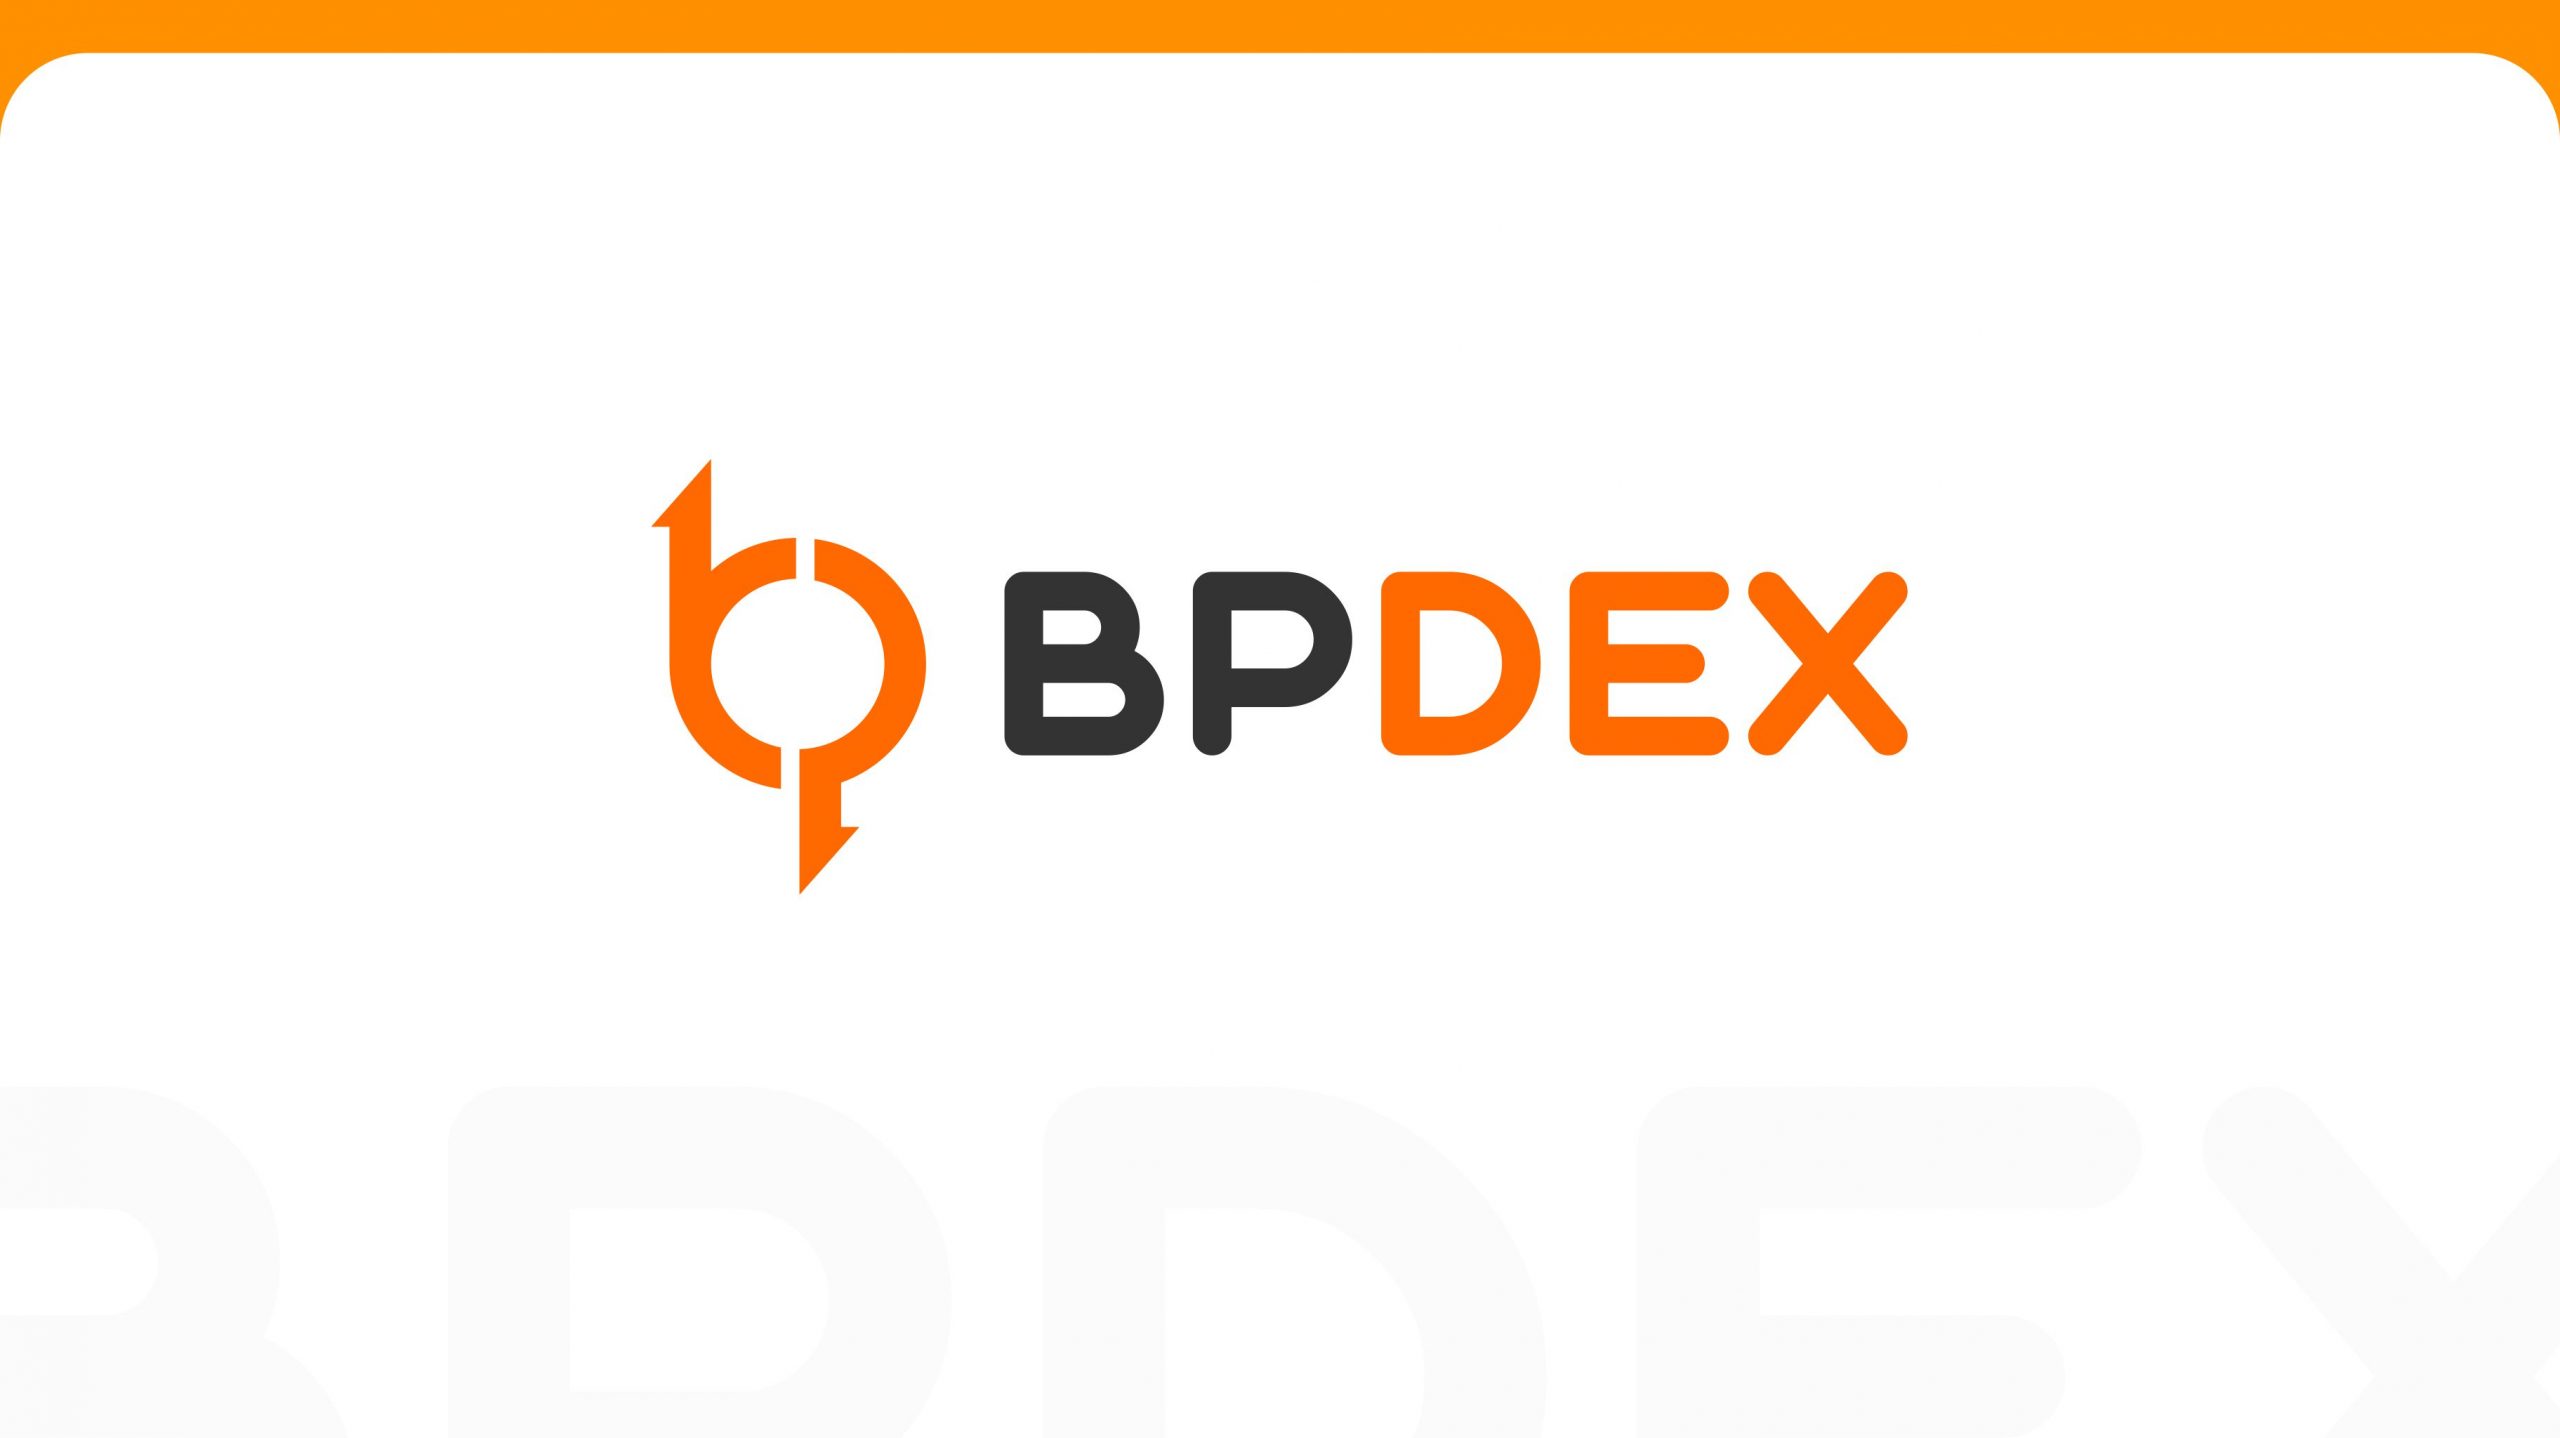 BPDEX